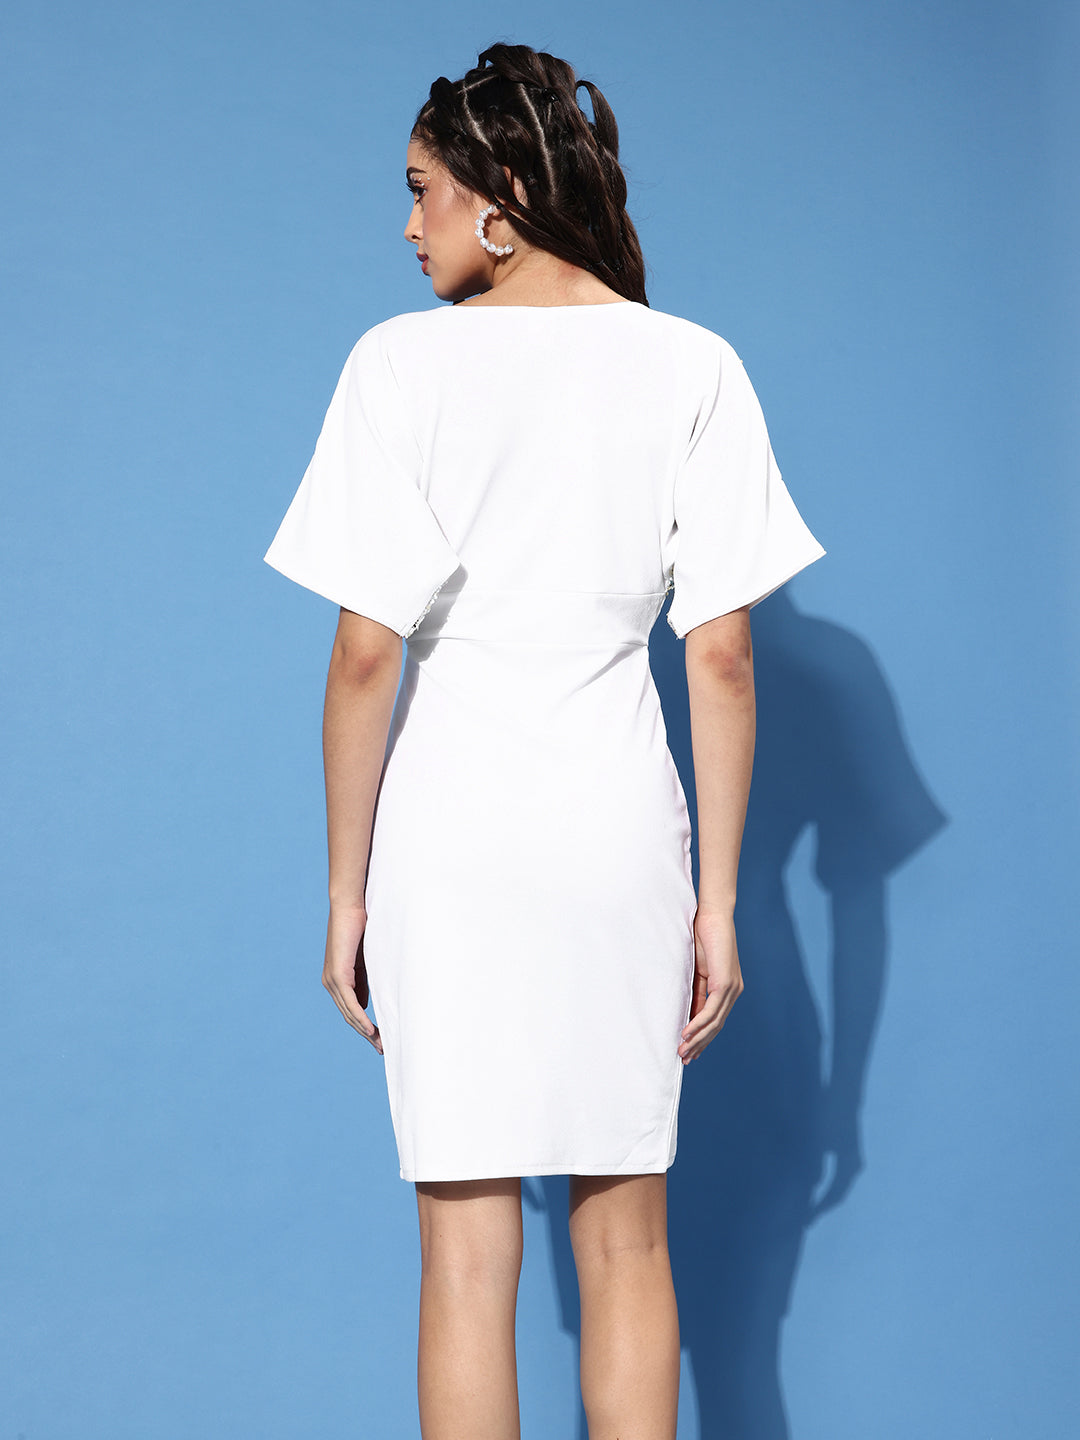 Athena White Sequined Embellished Bodycon Dress - Athena Lifestyle